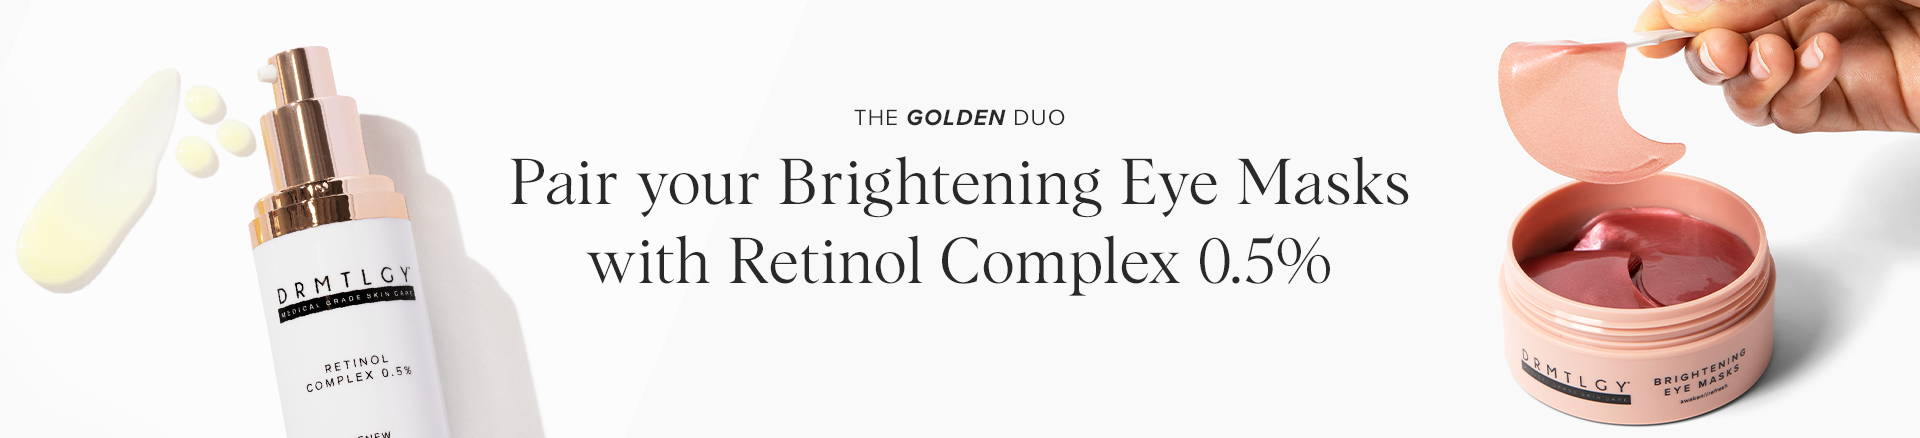 Pair Brightening Eye Masks with Retinol Complex 0.5%